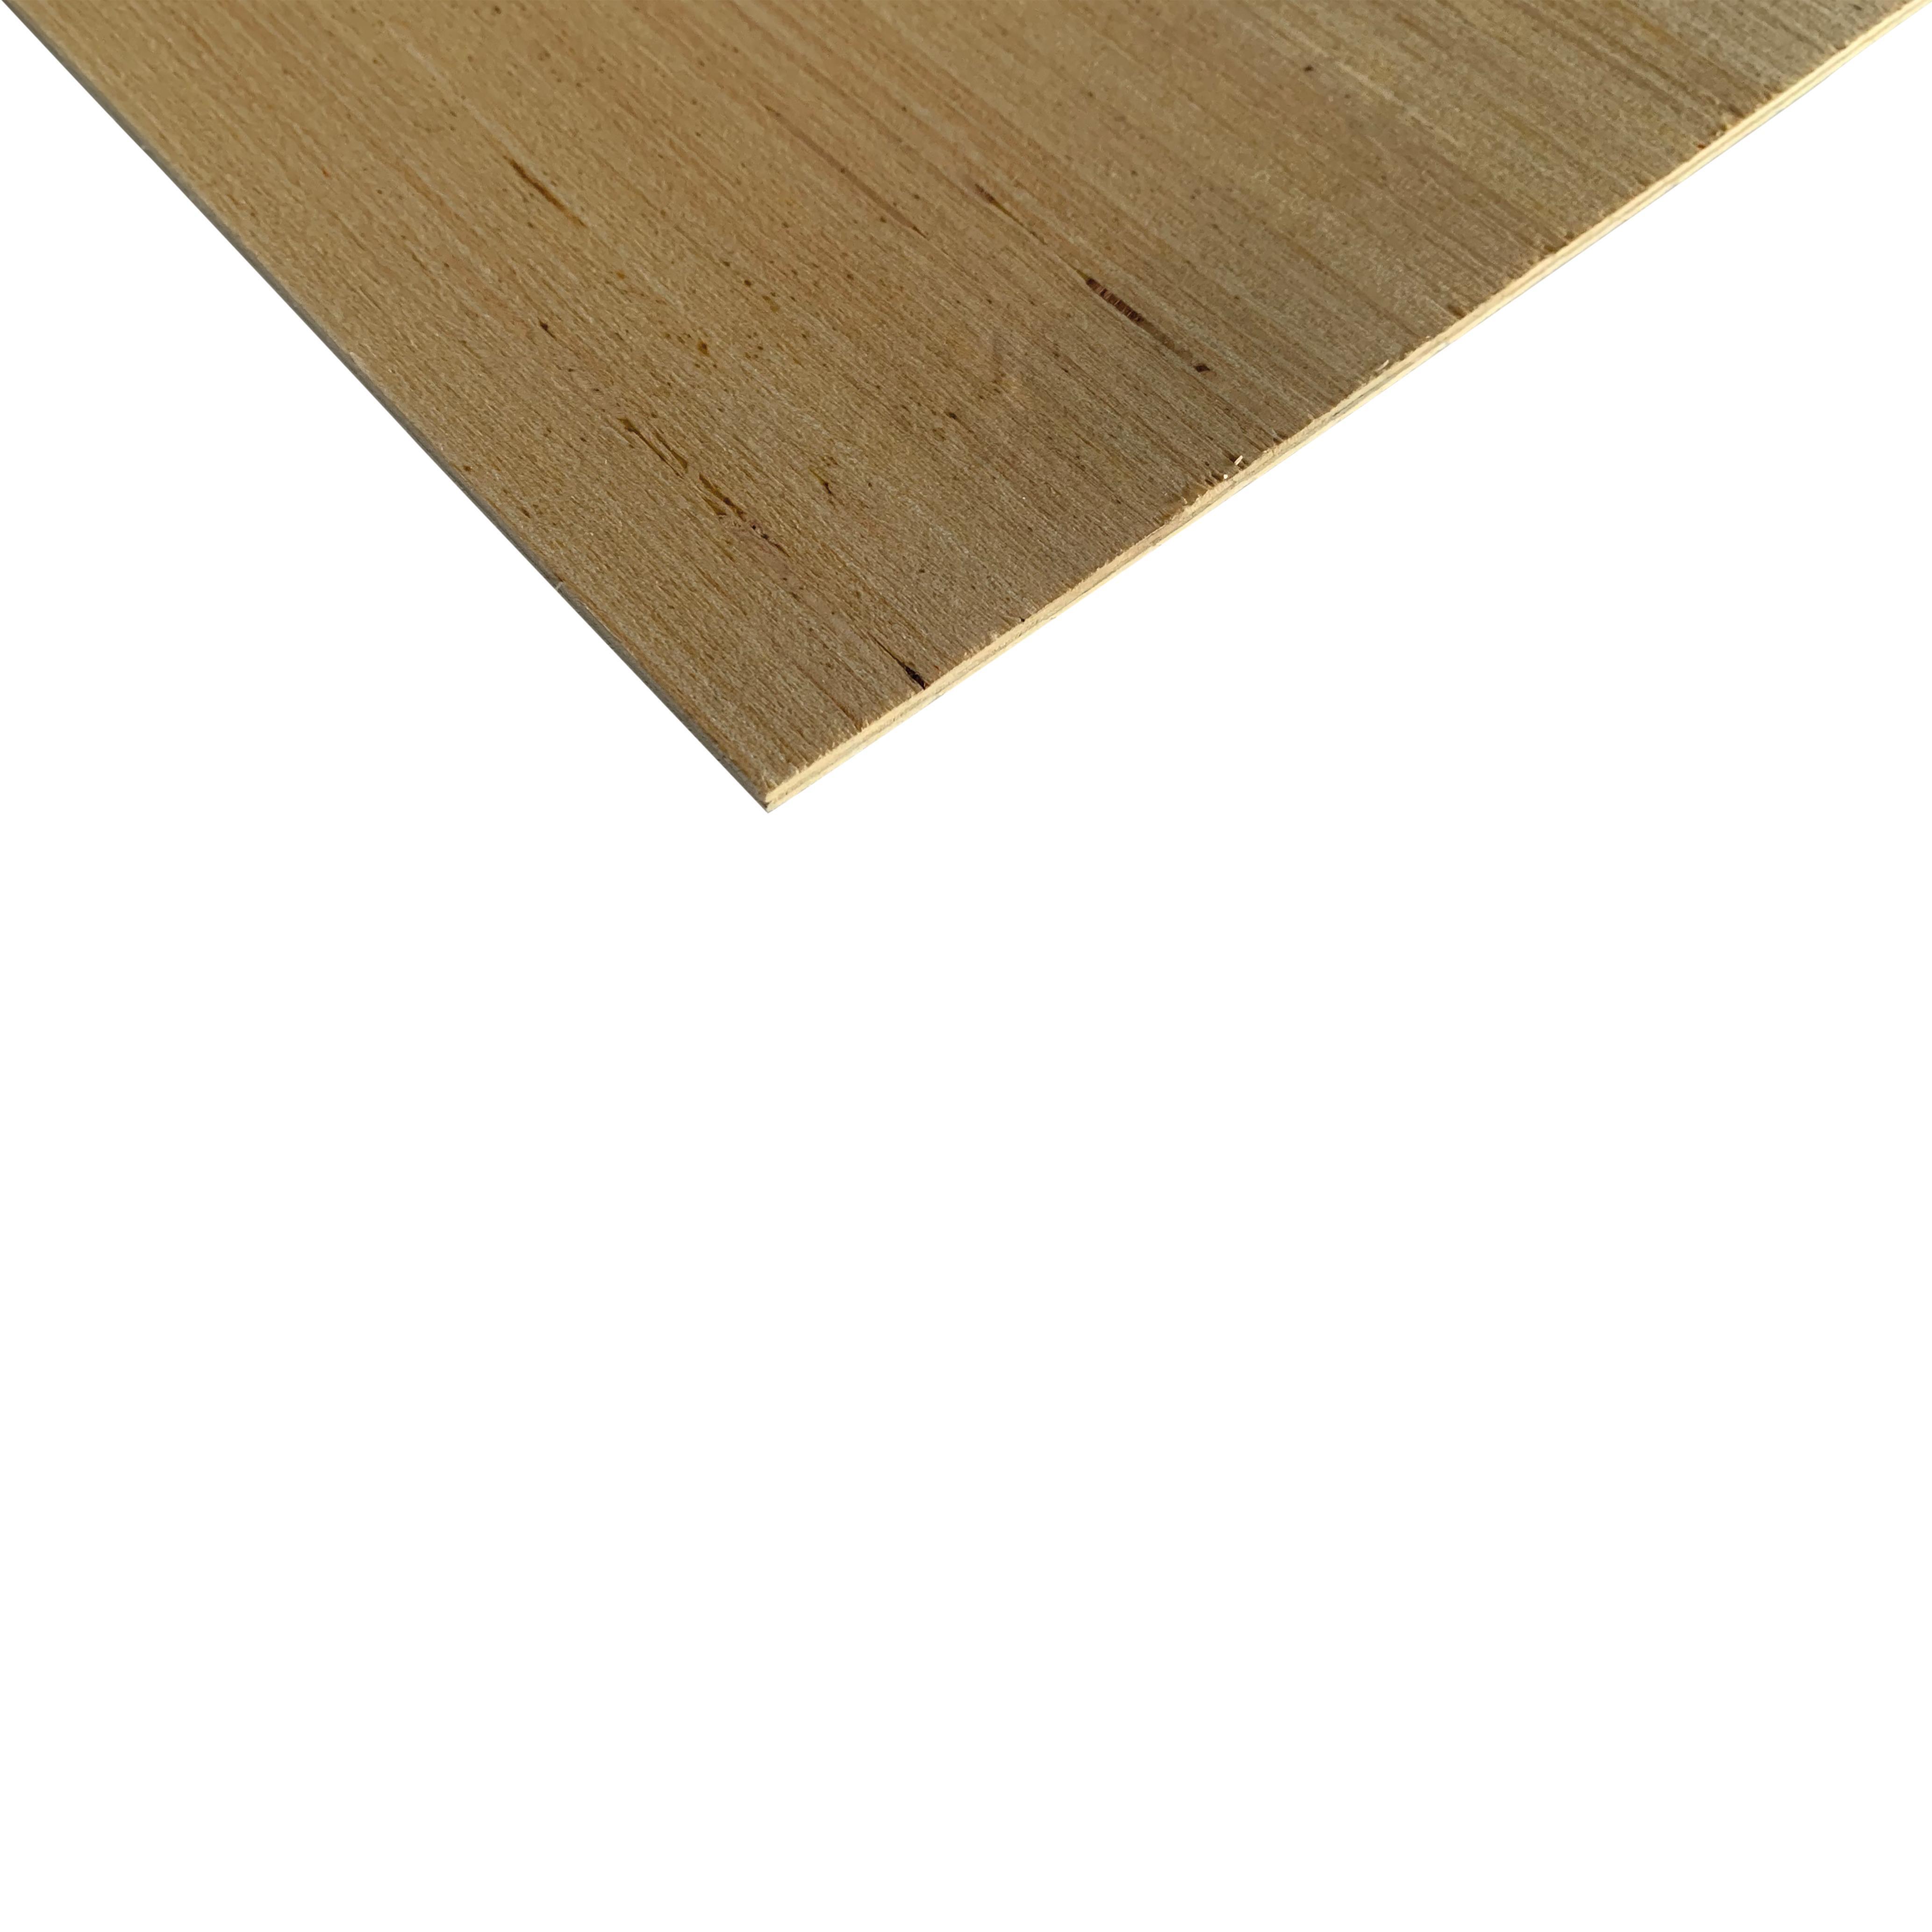 9mm legno compensato pannelli multistrati tagliati fino a 200cm 130x130 cm